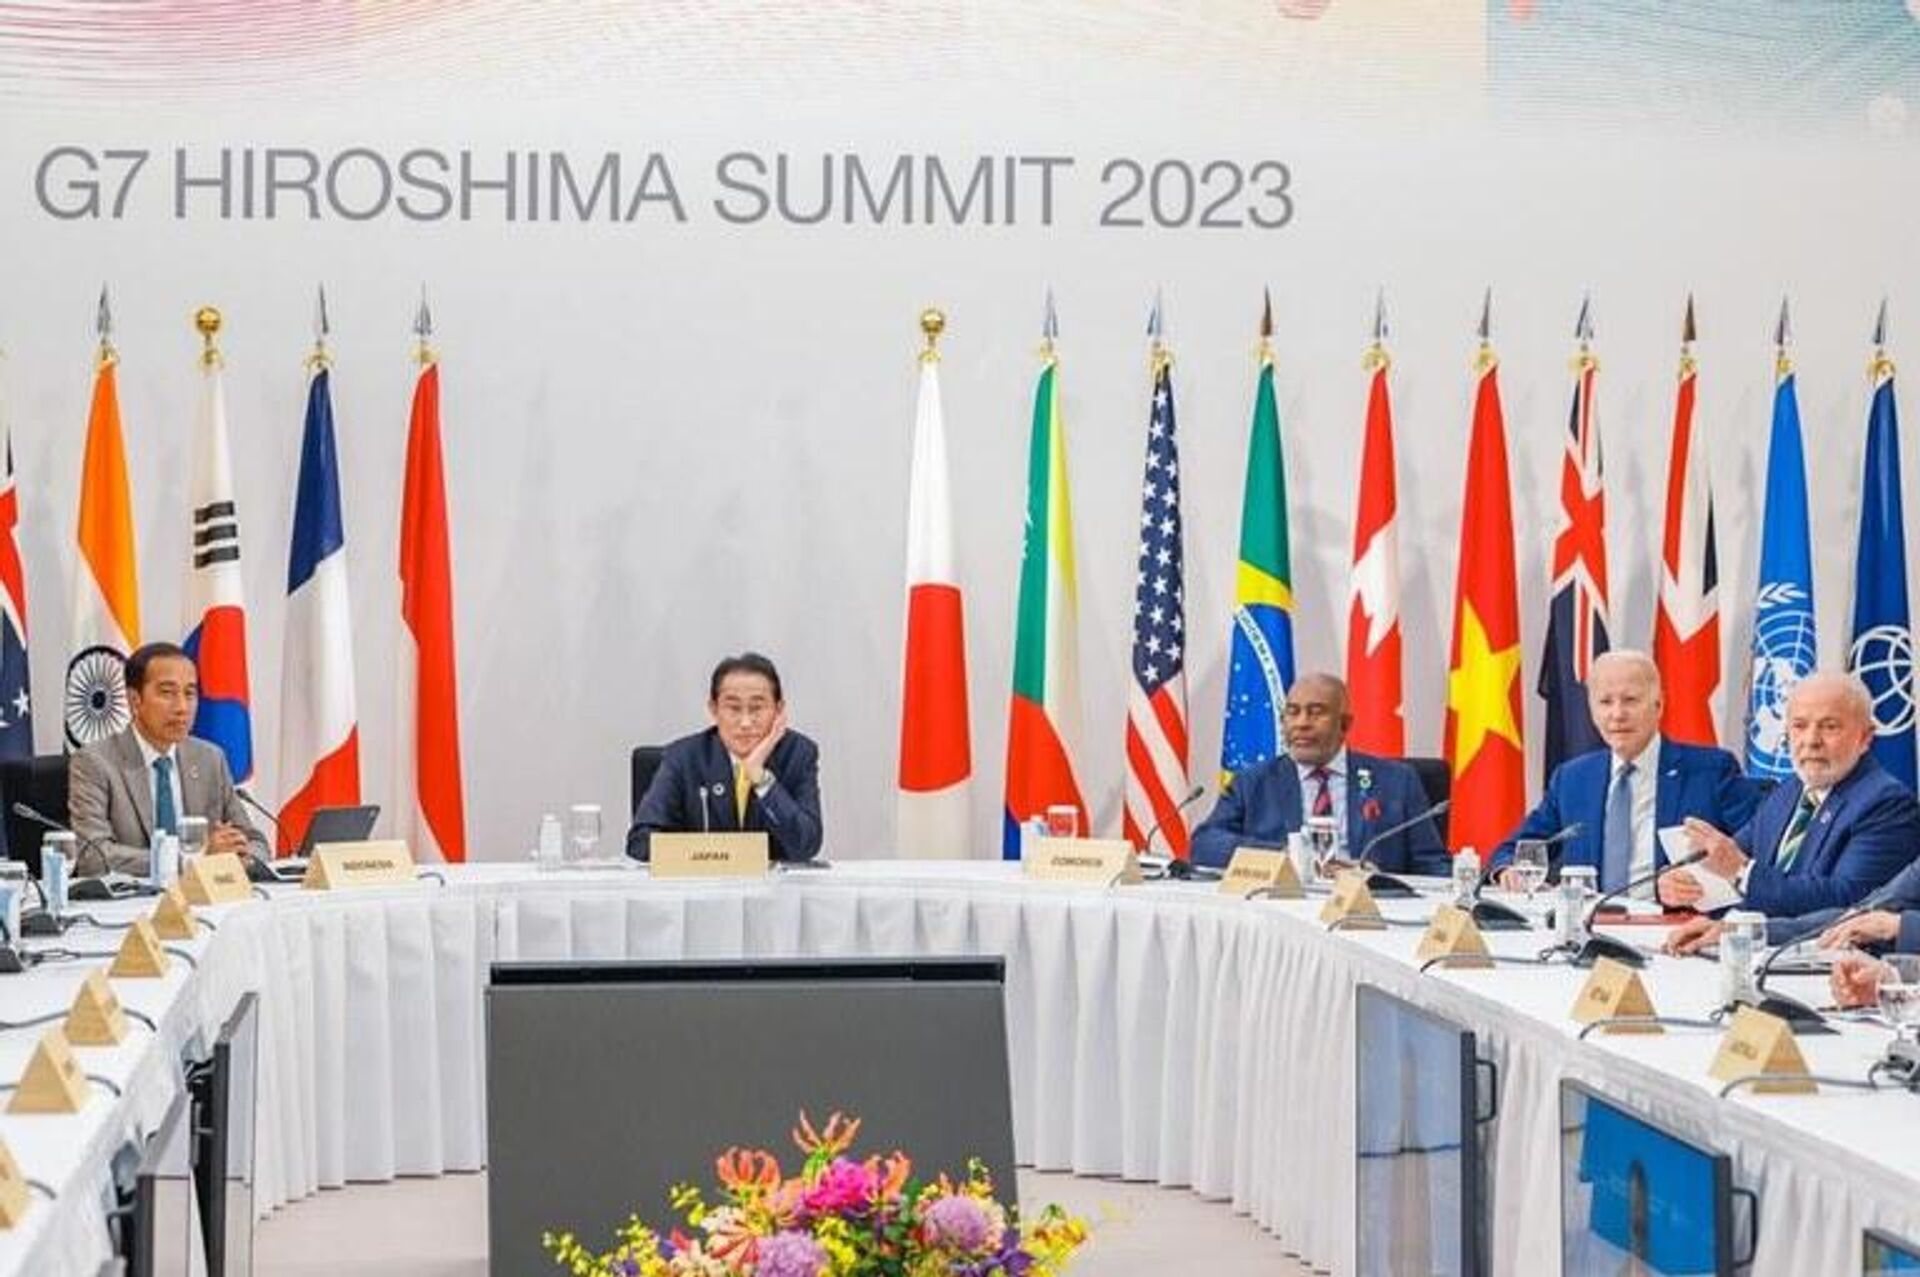 El presidente de Brasil, Luiz Inacio Lula da Silva, participa en la cumbre del G7 en Hiroshima, Japón. - Sputnik Mundo, 1920, 24.05.2023